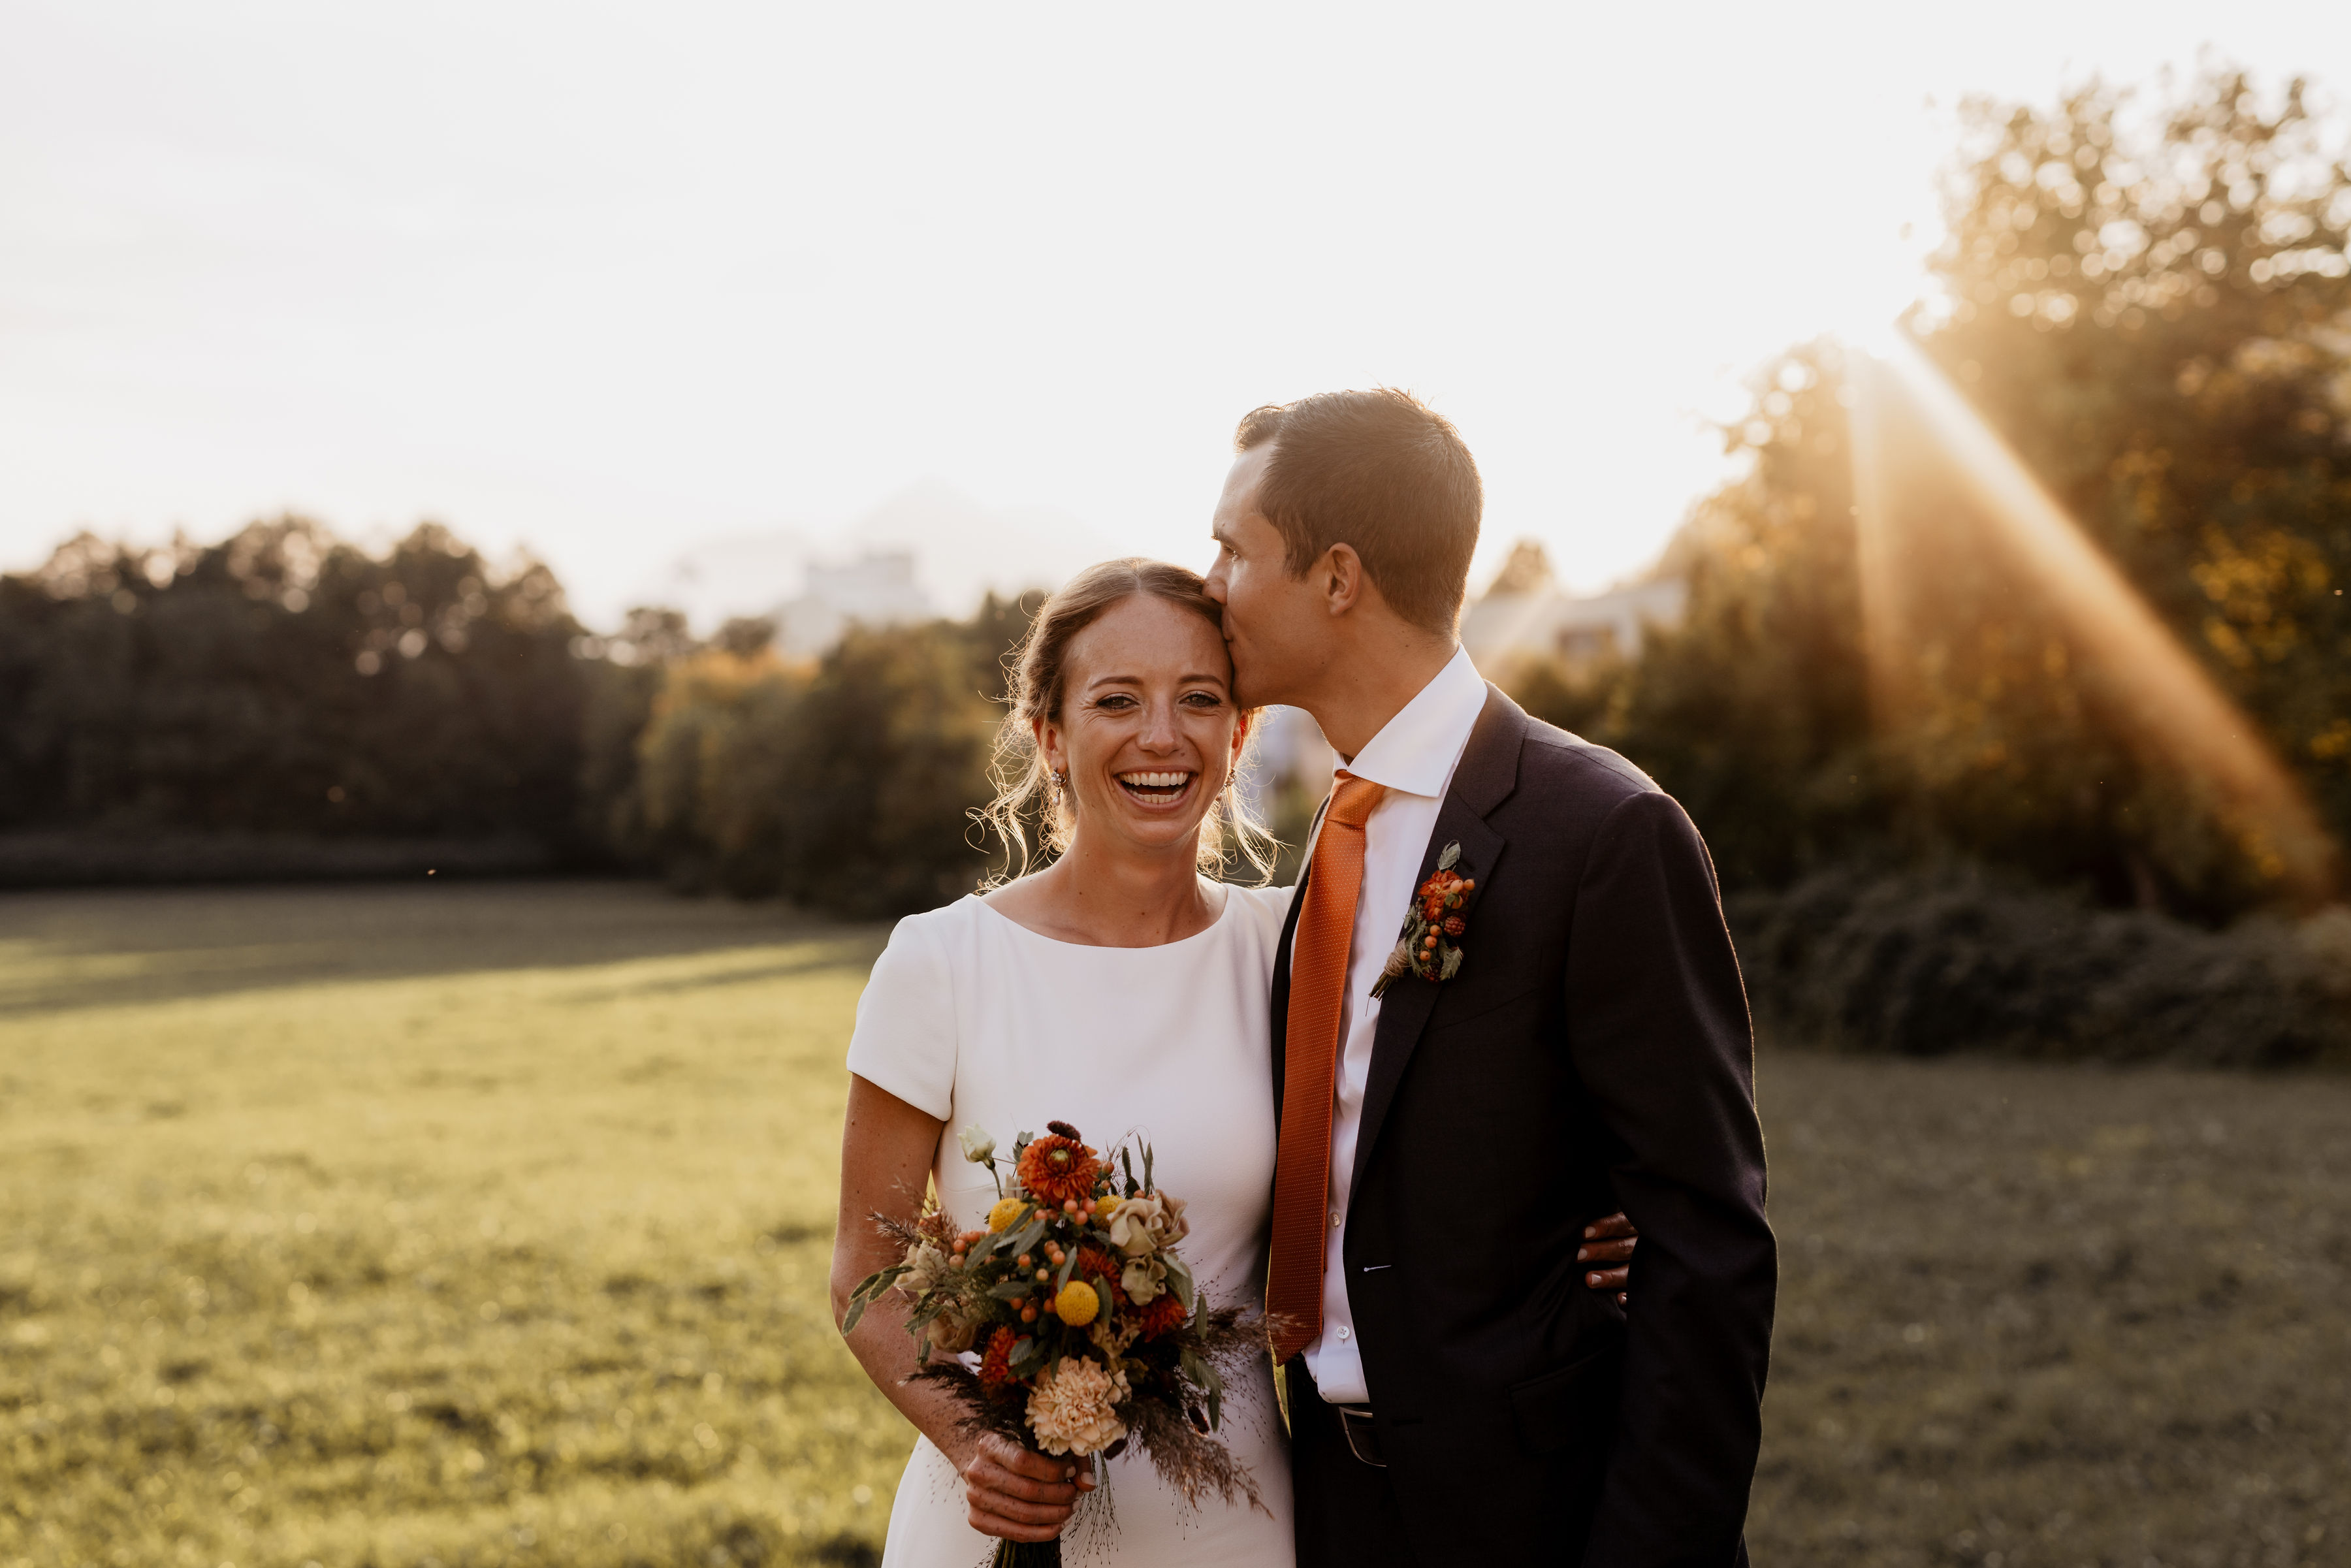 Liebevoller Augenblick: Bräutigam küsst Braut auf die Schläfe, während sie lacht und einen Brautstrauß hält.